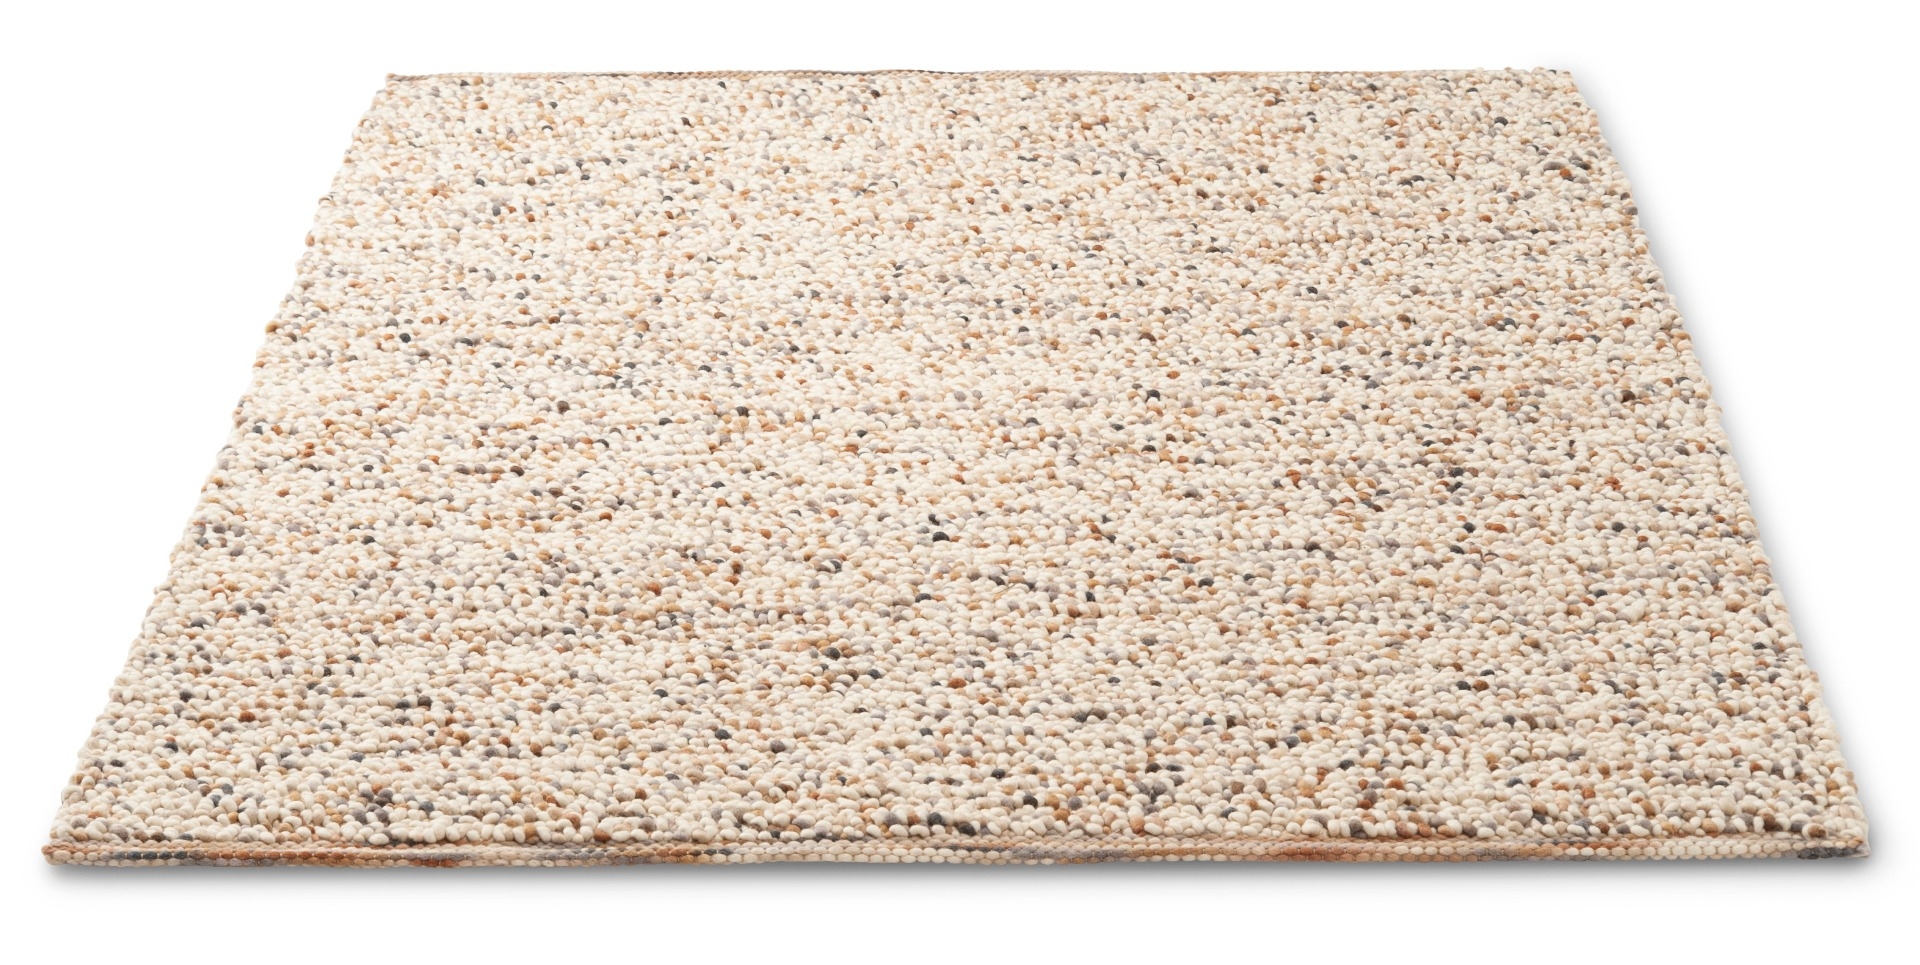 Beach Sand Handwoven Rug ☞ Size: 200 x 300 cm